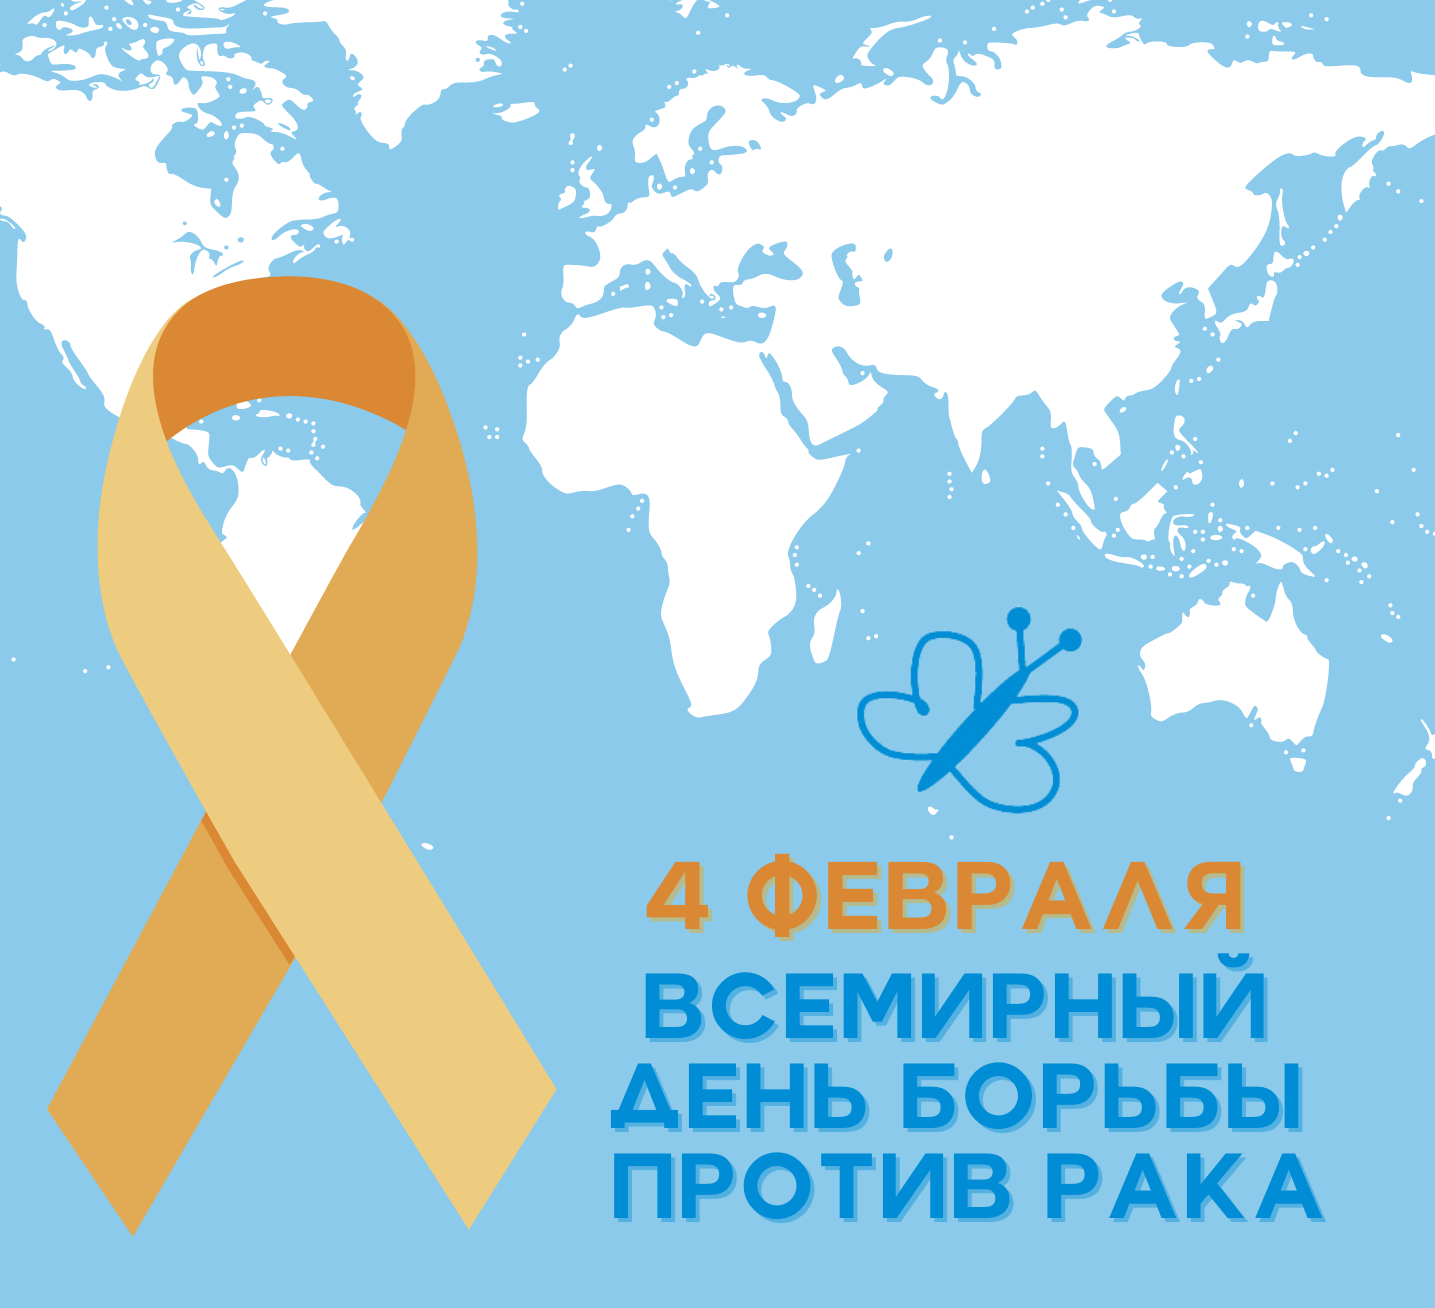 4 февраля - Всемирный день борьбы против рака!